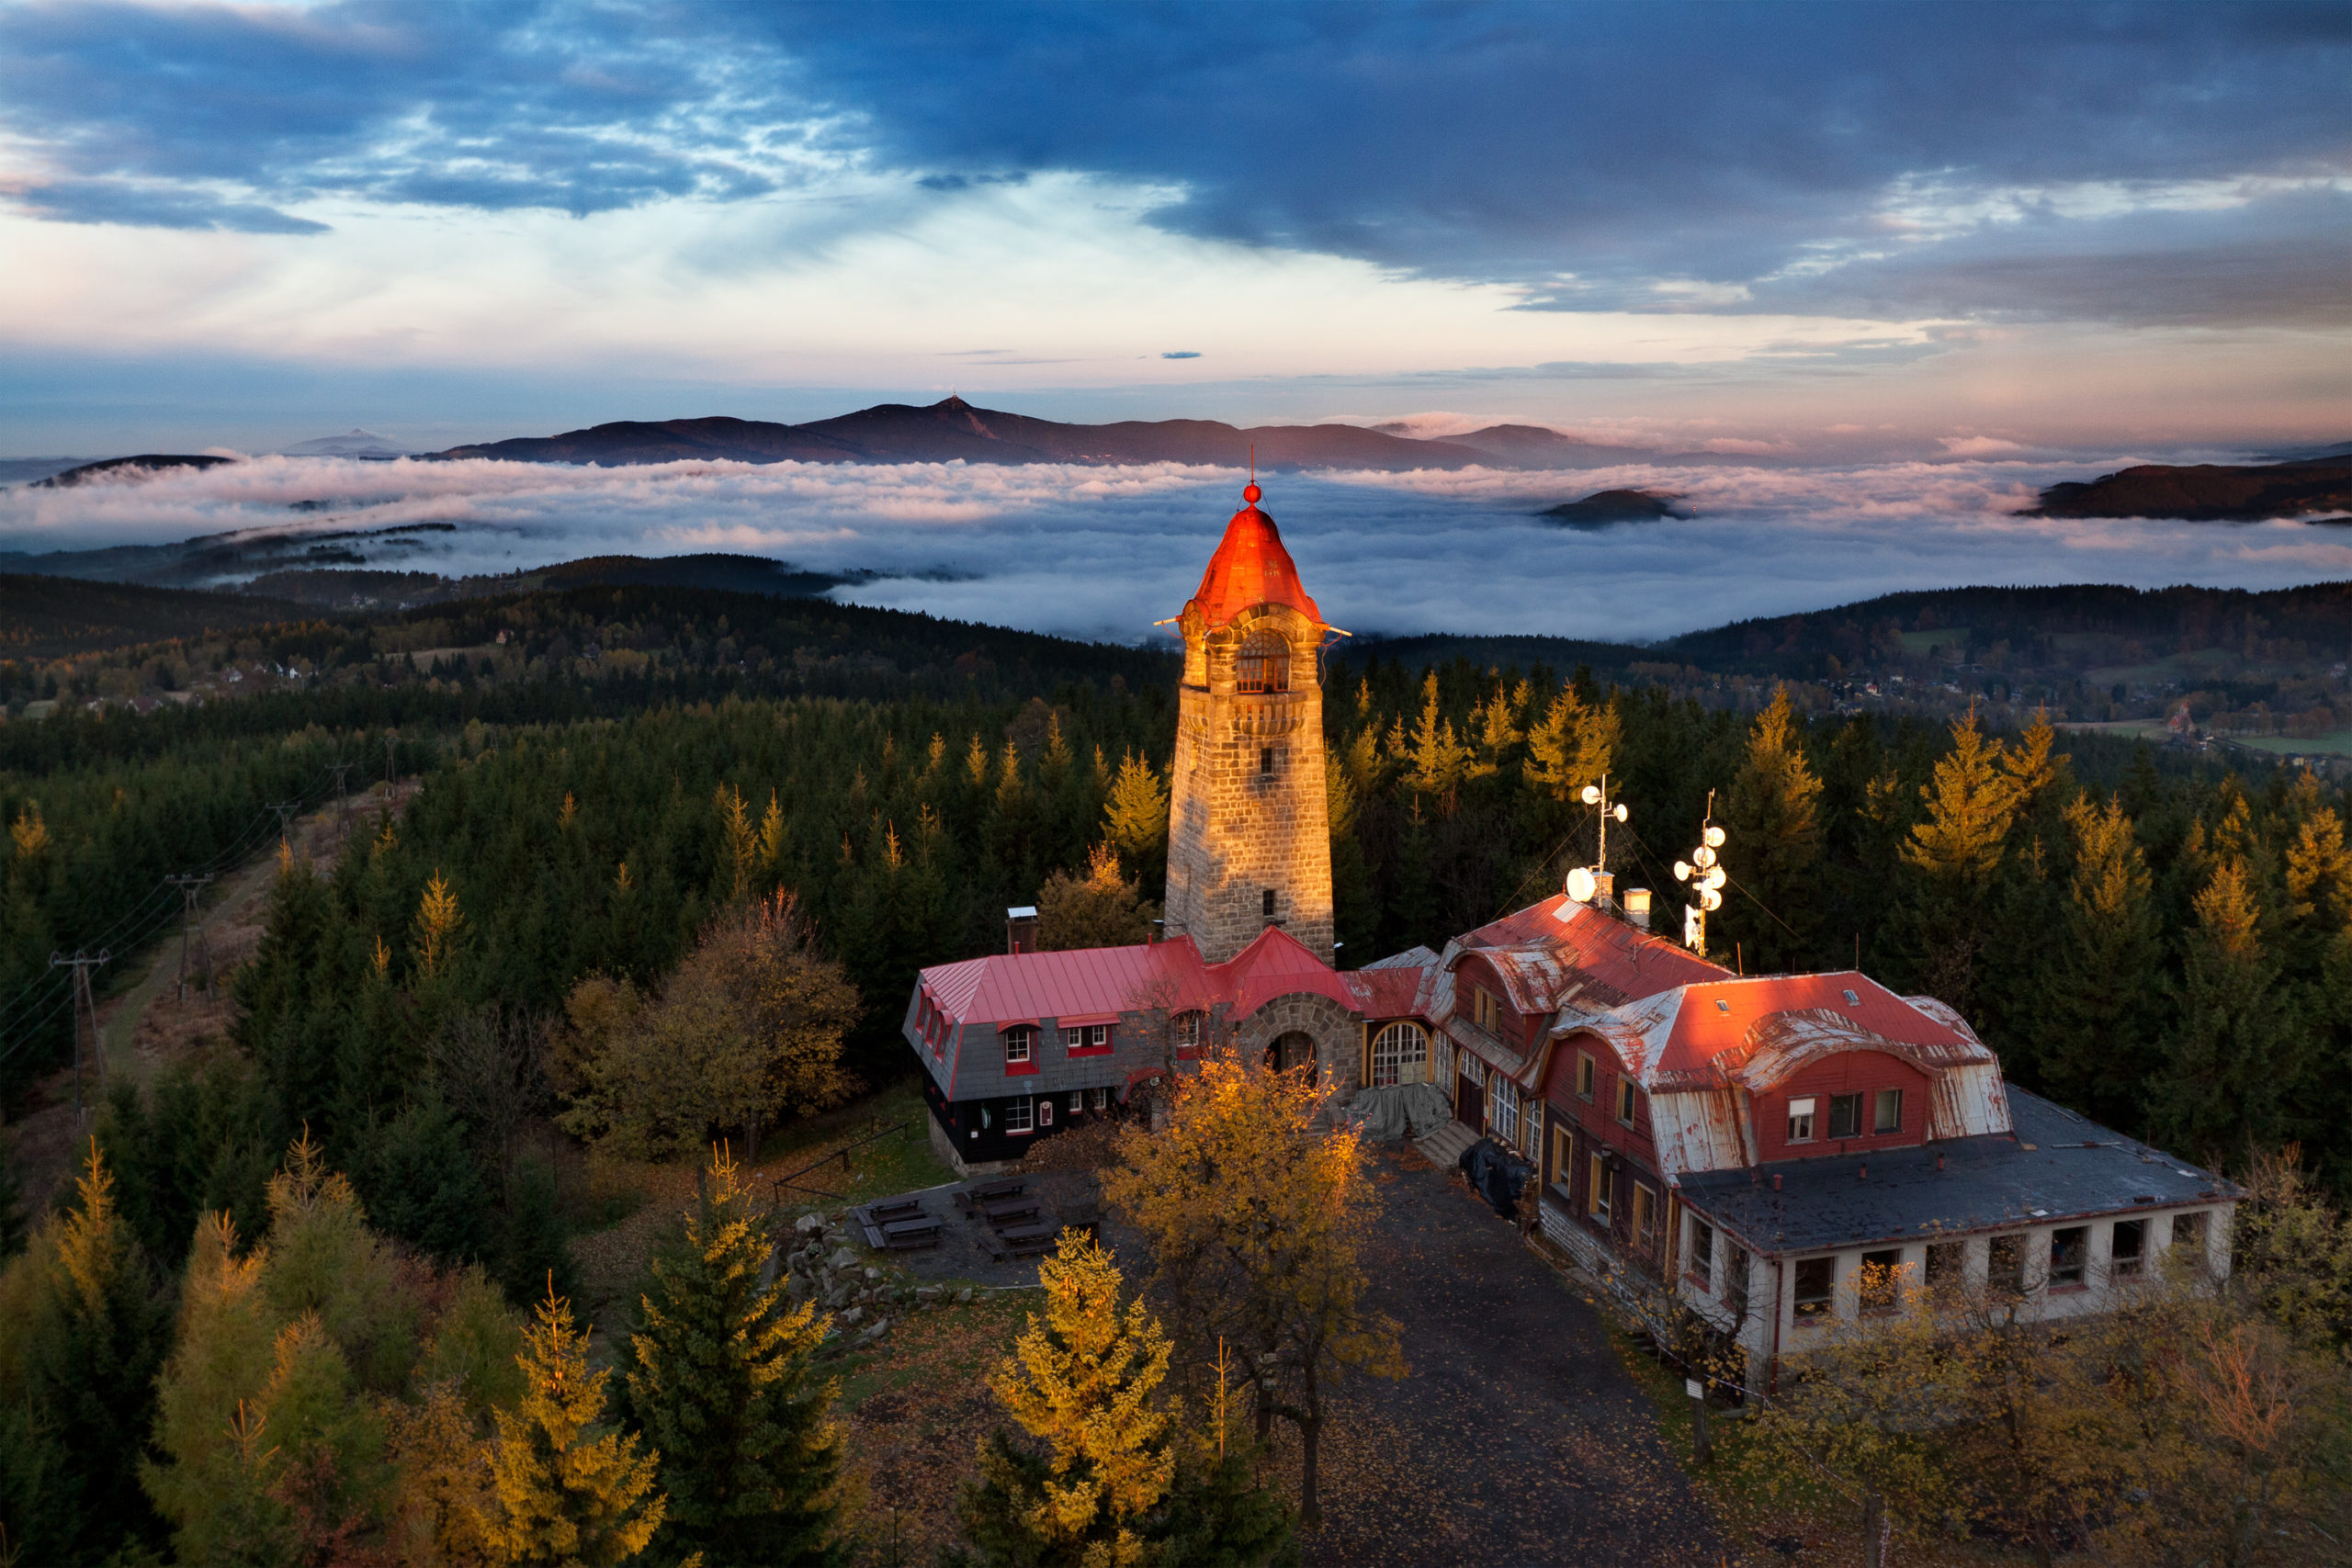 Jizera Mountain Beechwood in Czech Republic placed on UNESCO World Heritage List